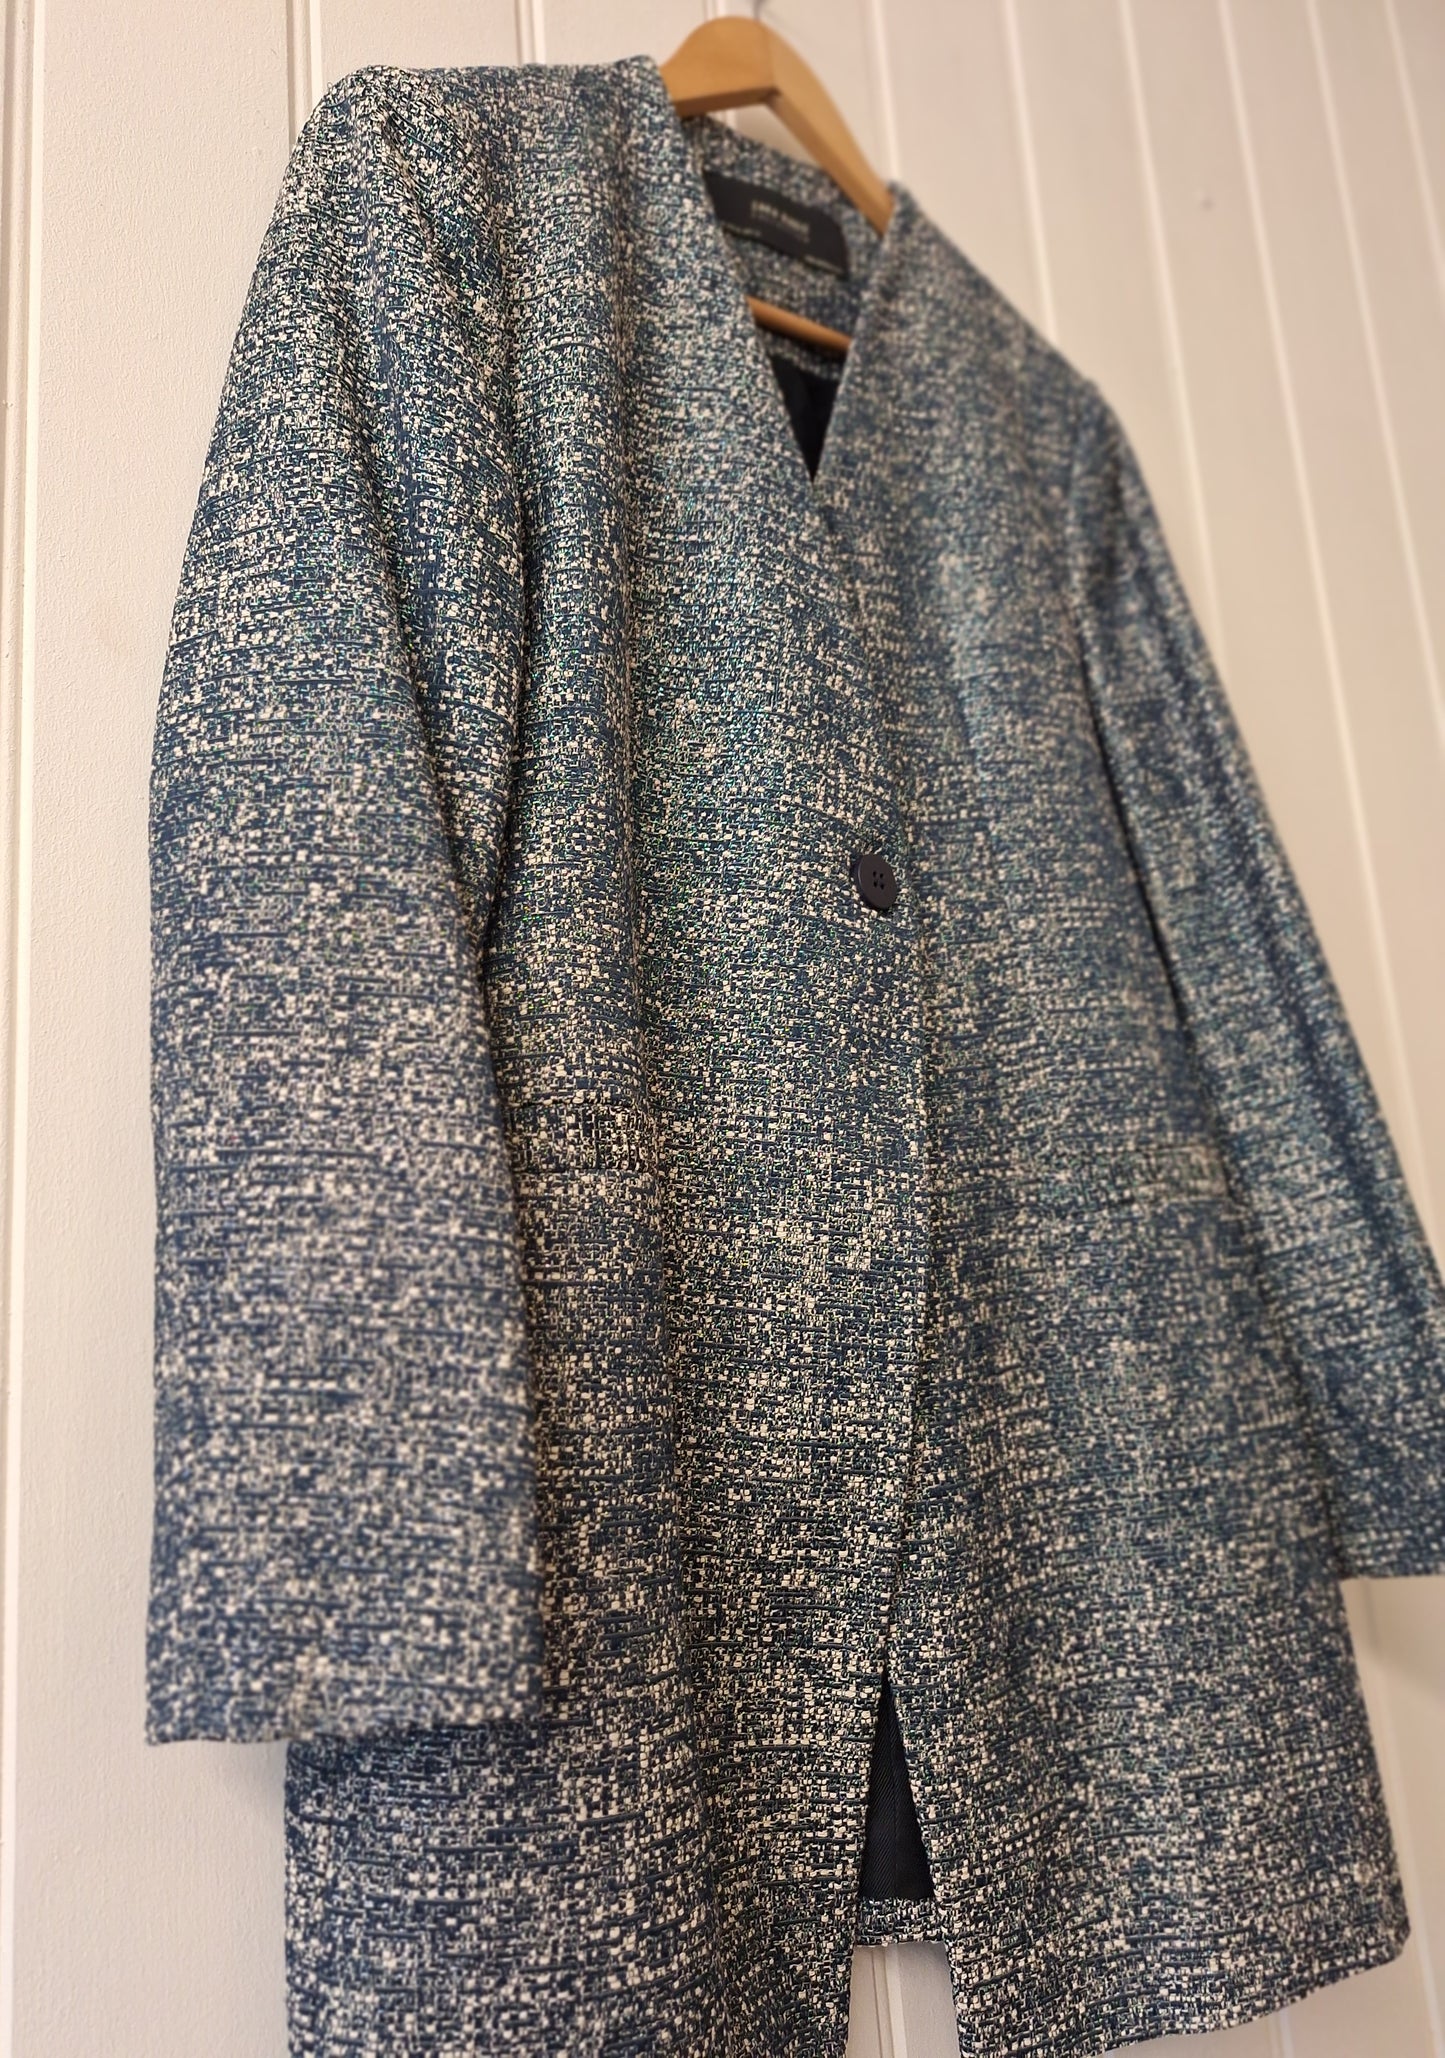 ZARA blue print coat XL